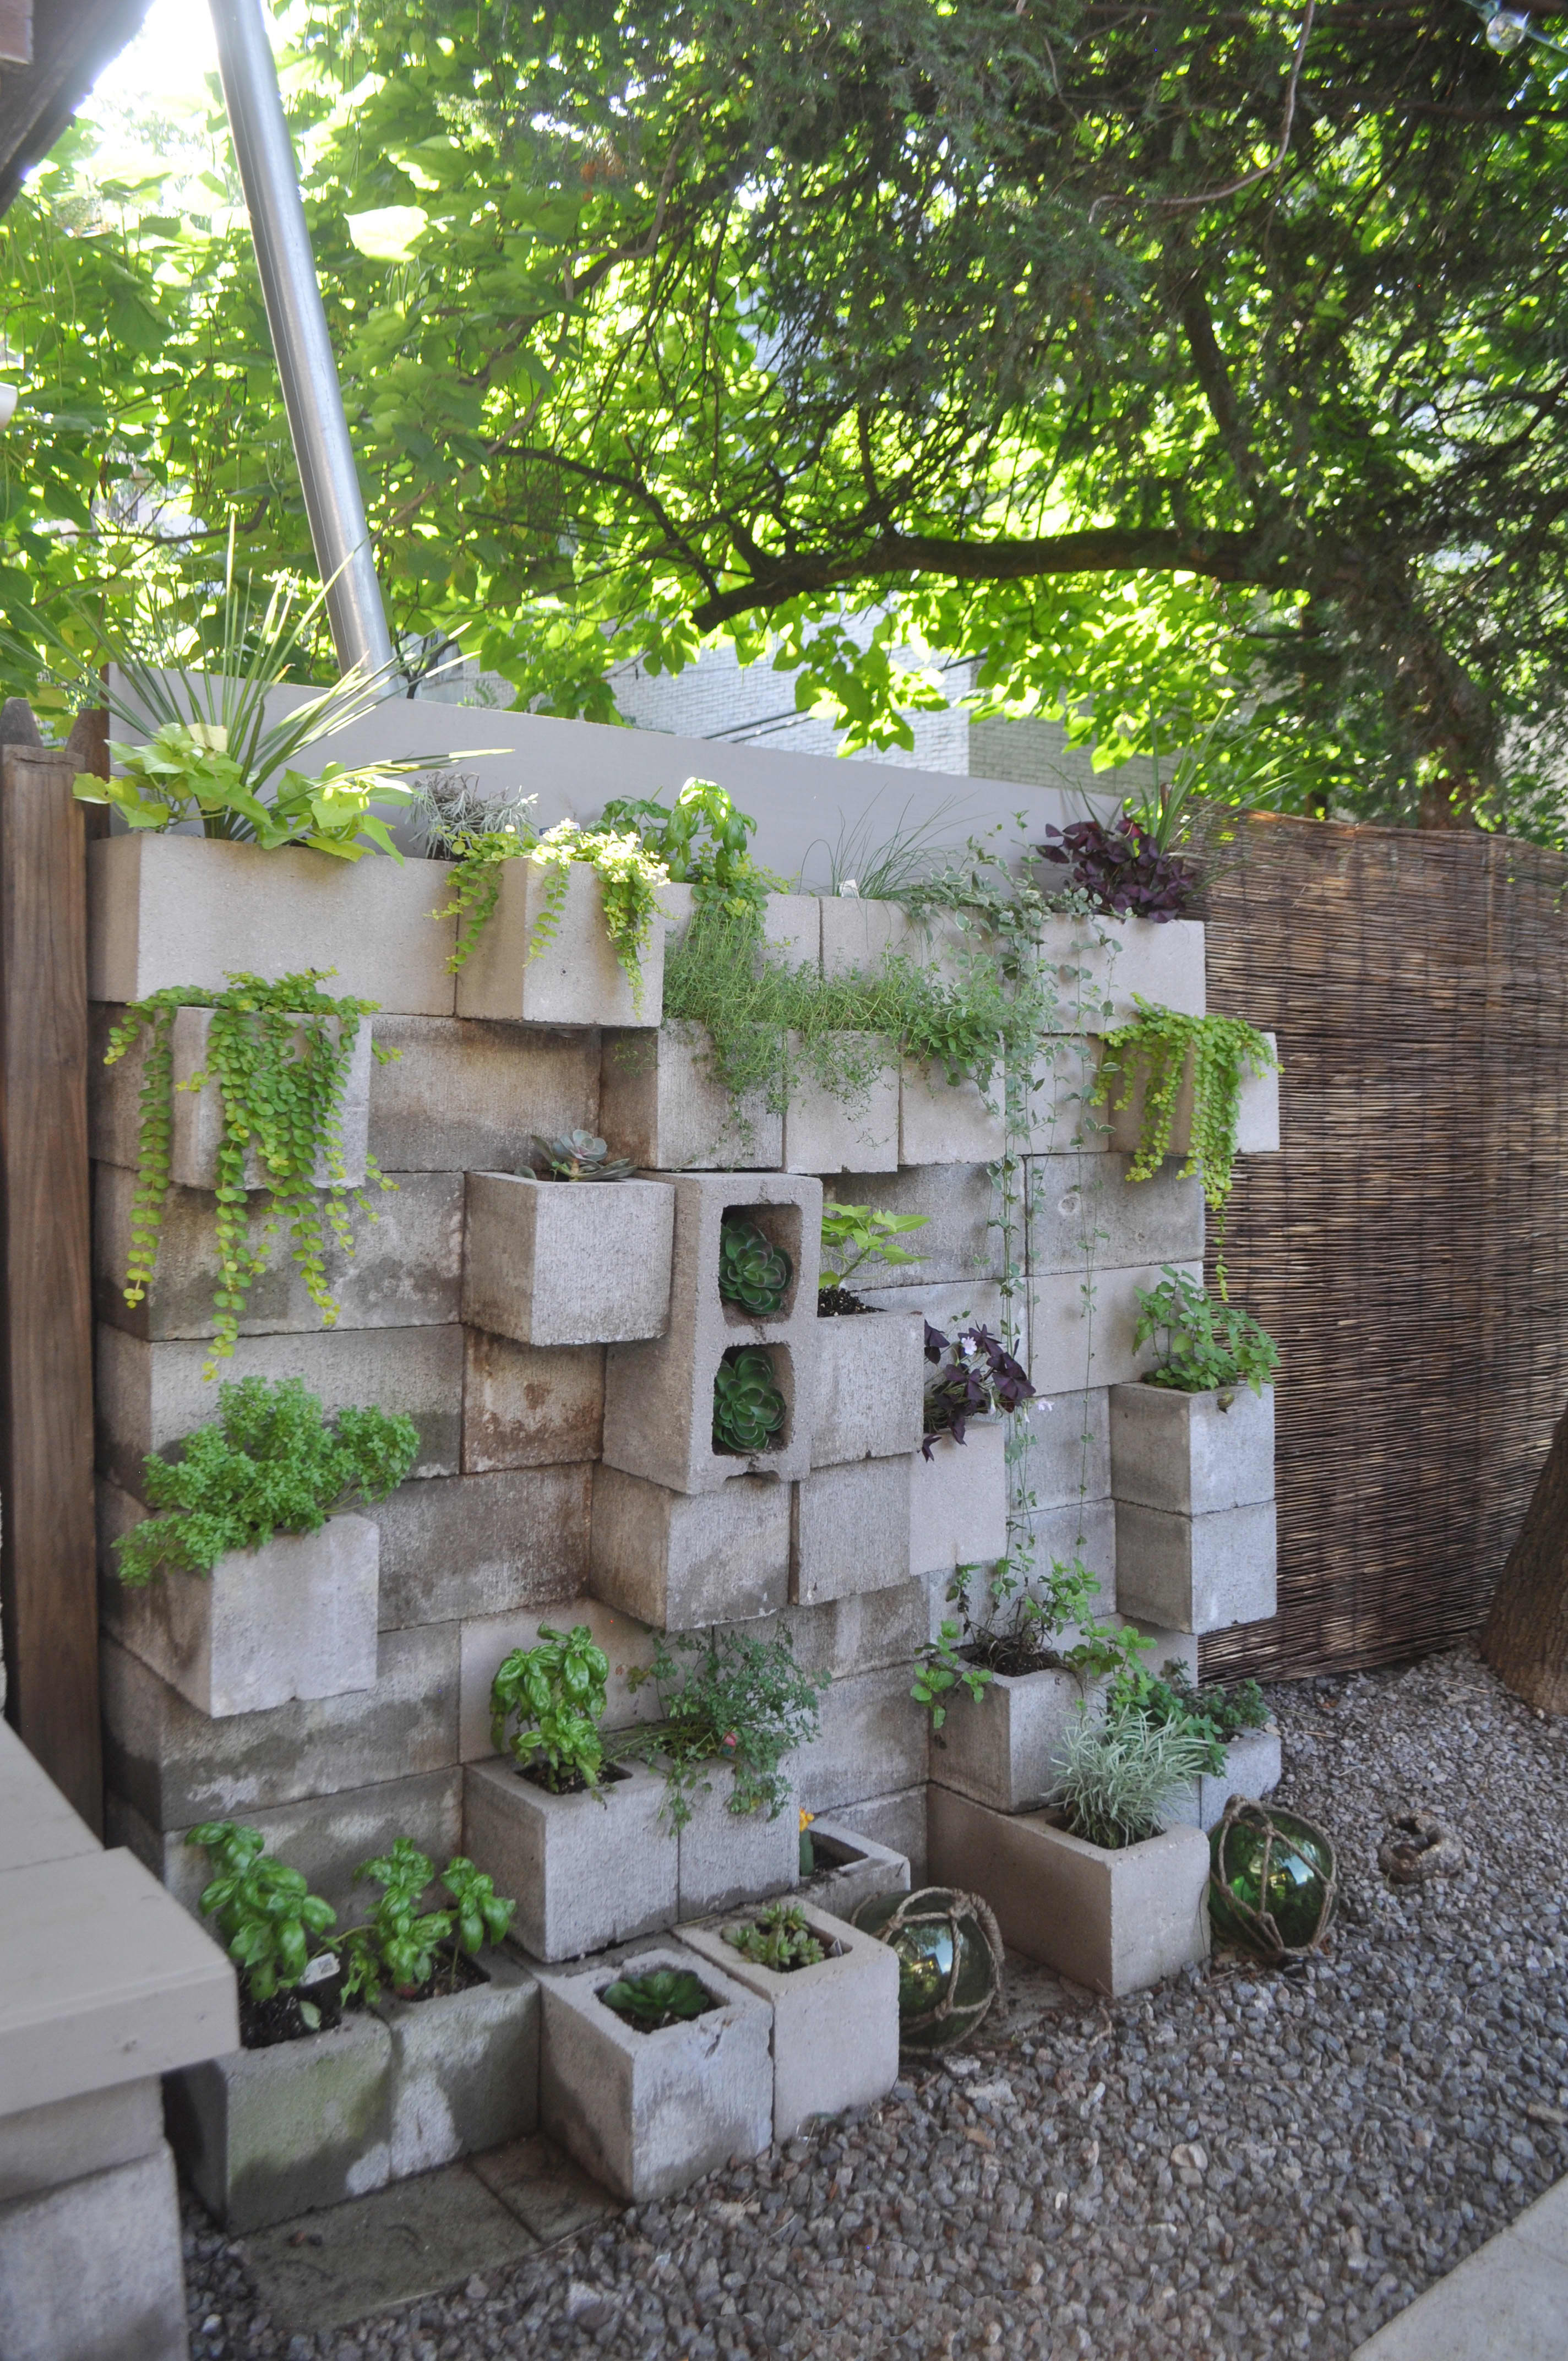 Vertical Balcony Garden Ideas